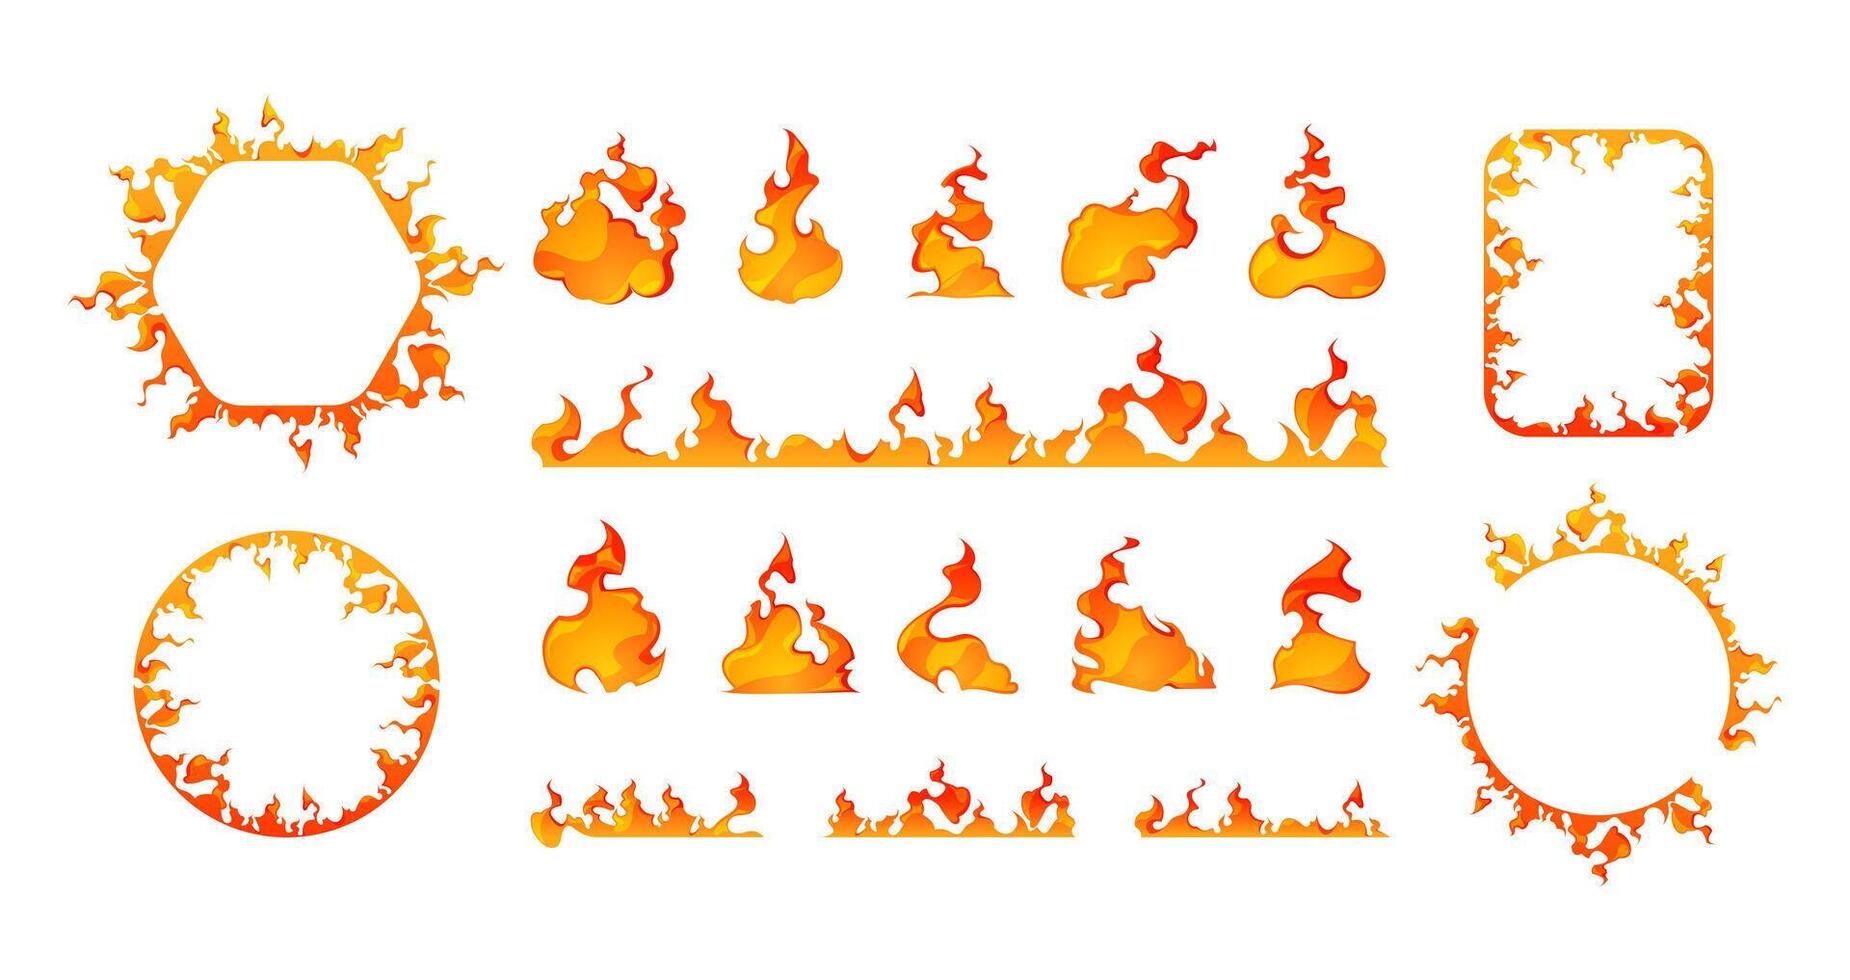 dibujos animados fuego marcos cuadrado y redondo llameante cifras, ardiente naranja y rojo fronteras, juego activo 2d elementos, encendido bordes vector aislado conjunto